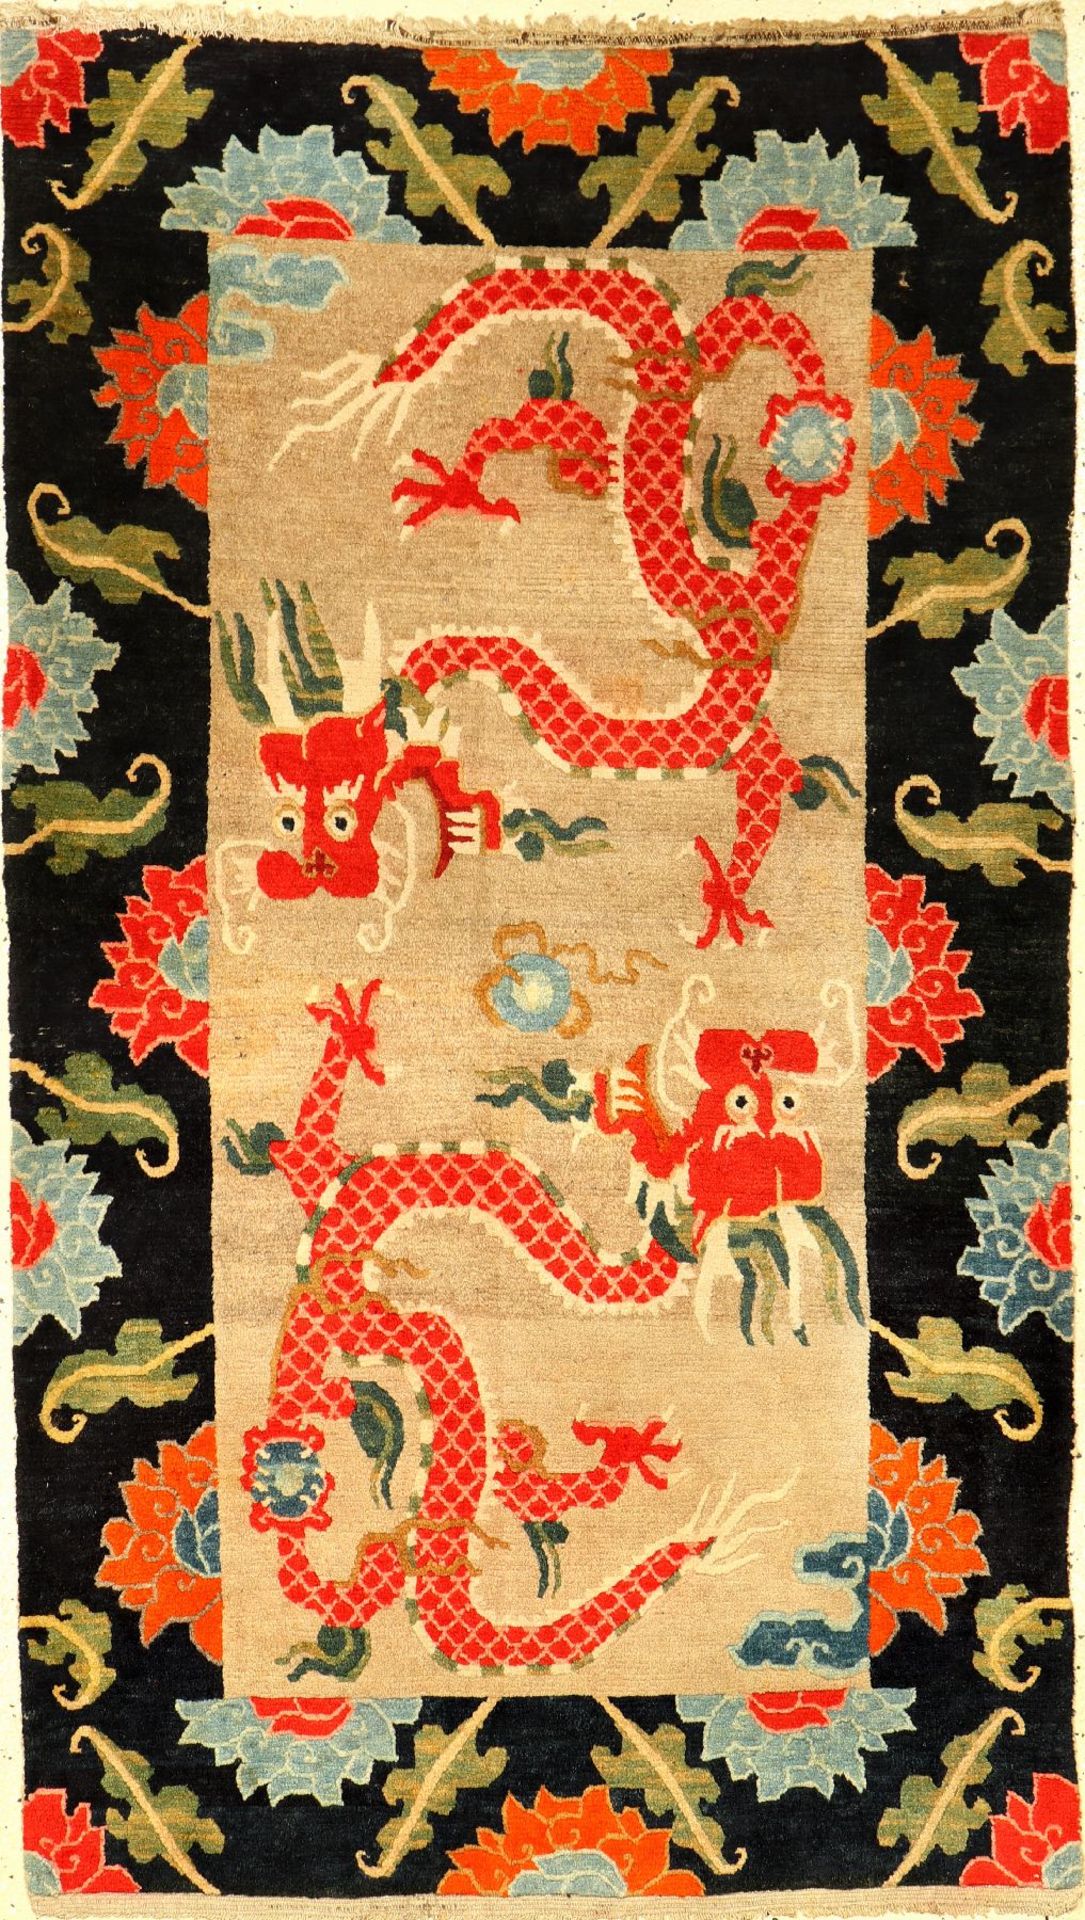 Seltener Schigatse Khaden alt (Drachen & Lotus), Südtibet, um 1920, Wolle geknüpft auf Wolle.